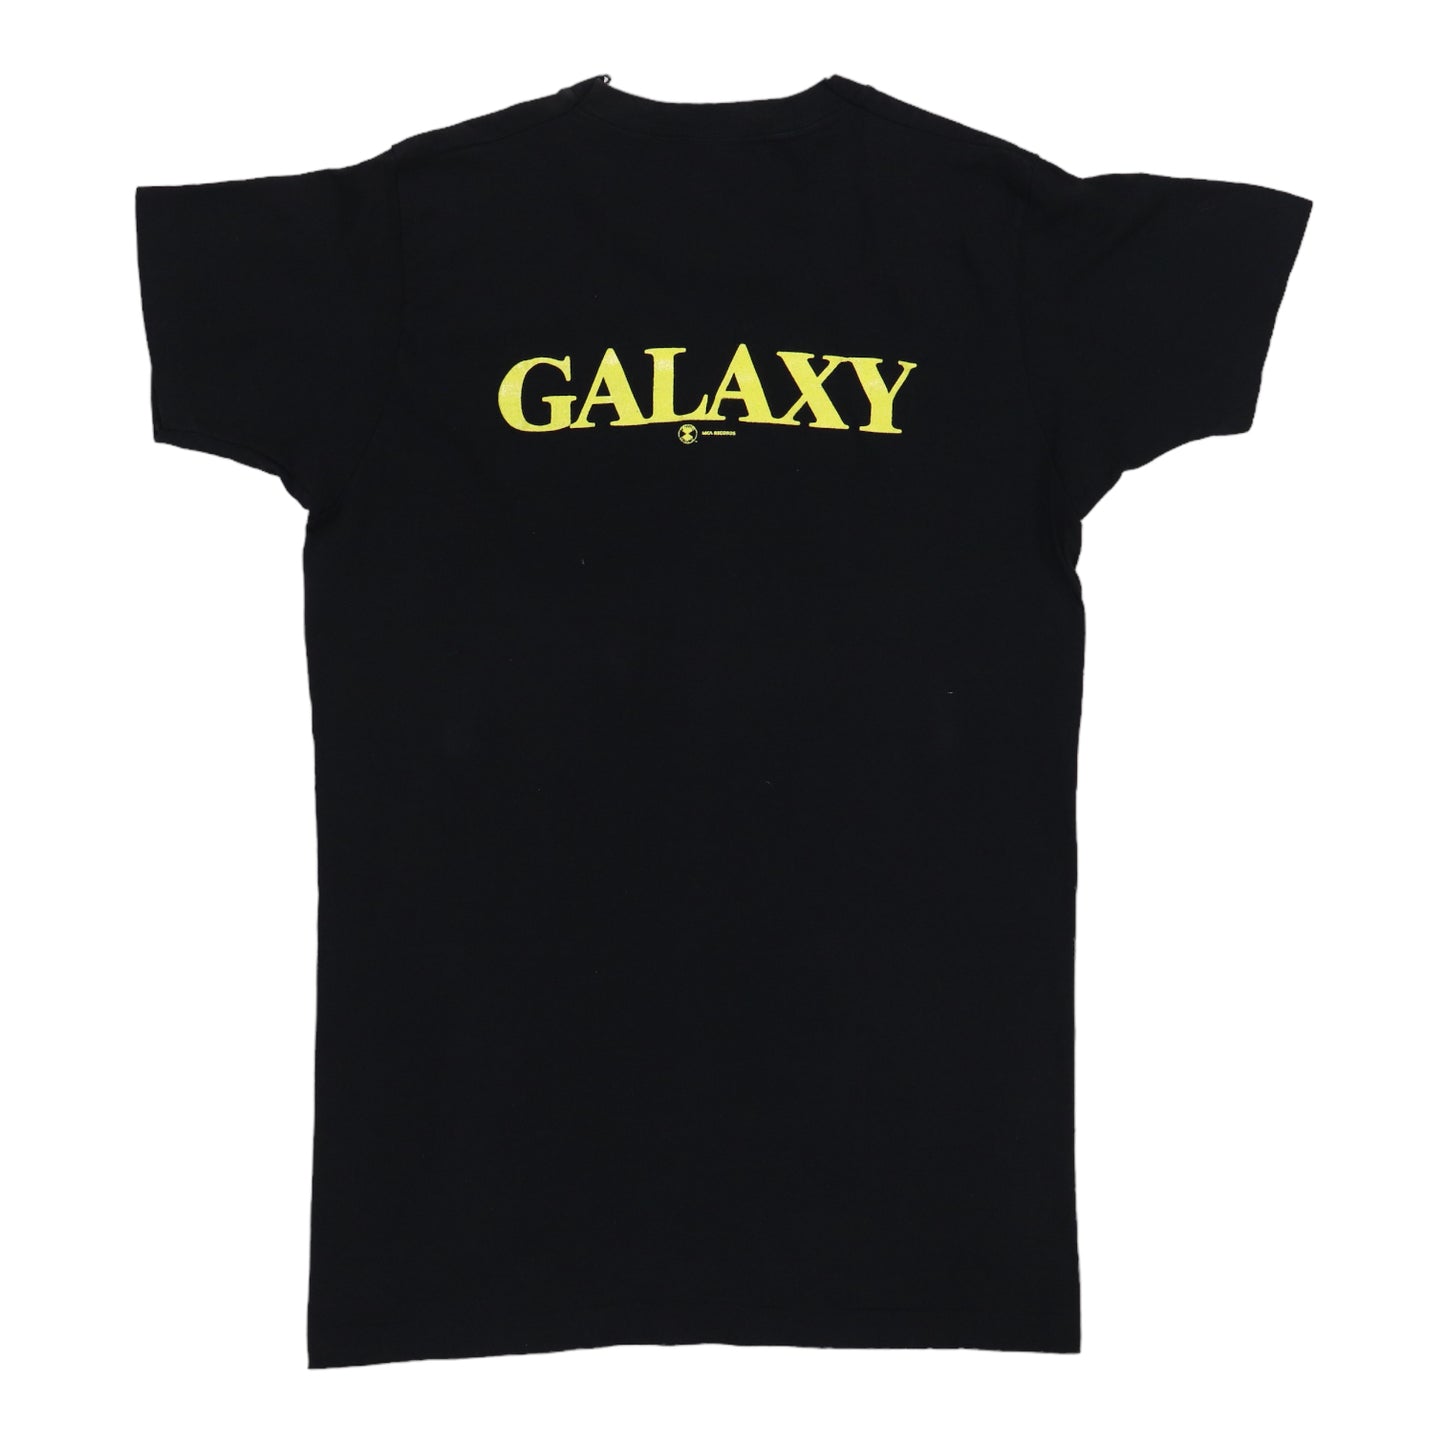 1977 War Galaxy Promo Shirt